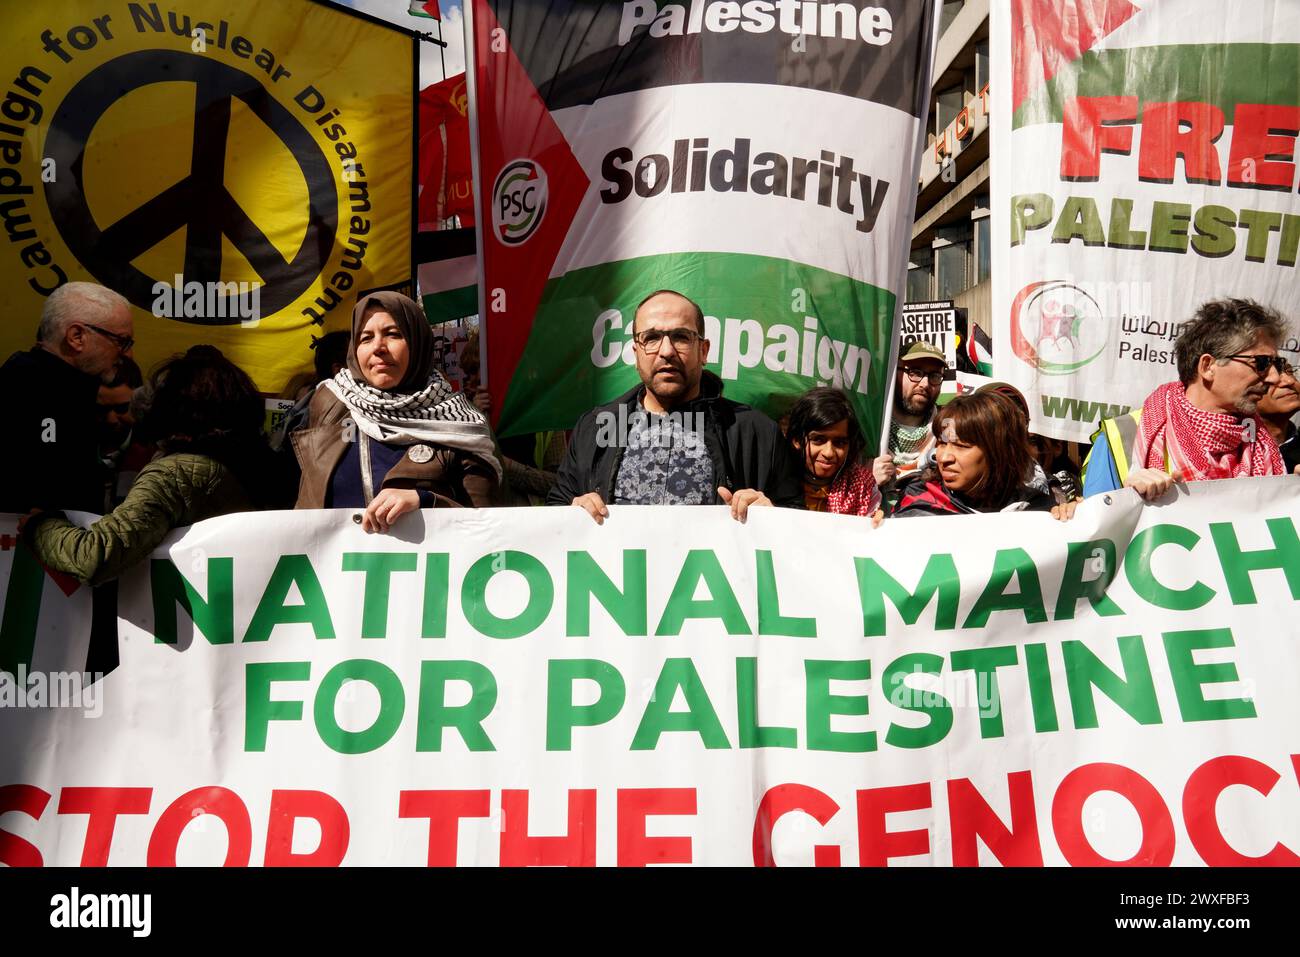 Housands a marché de Russell Square à Trafalgar Square, lors de ce qui est maintenant la onzième marche consécutive à Londres, exigeant un cessez-le-feu à Gaza. La marche est restée pacifique. Crédit : Natasha Quarmby/Alamy Live News Banque D'Images